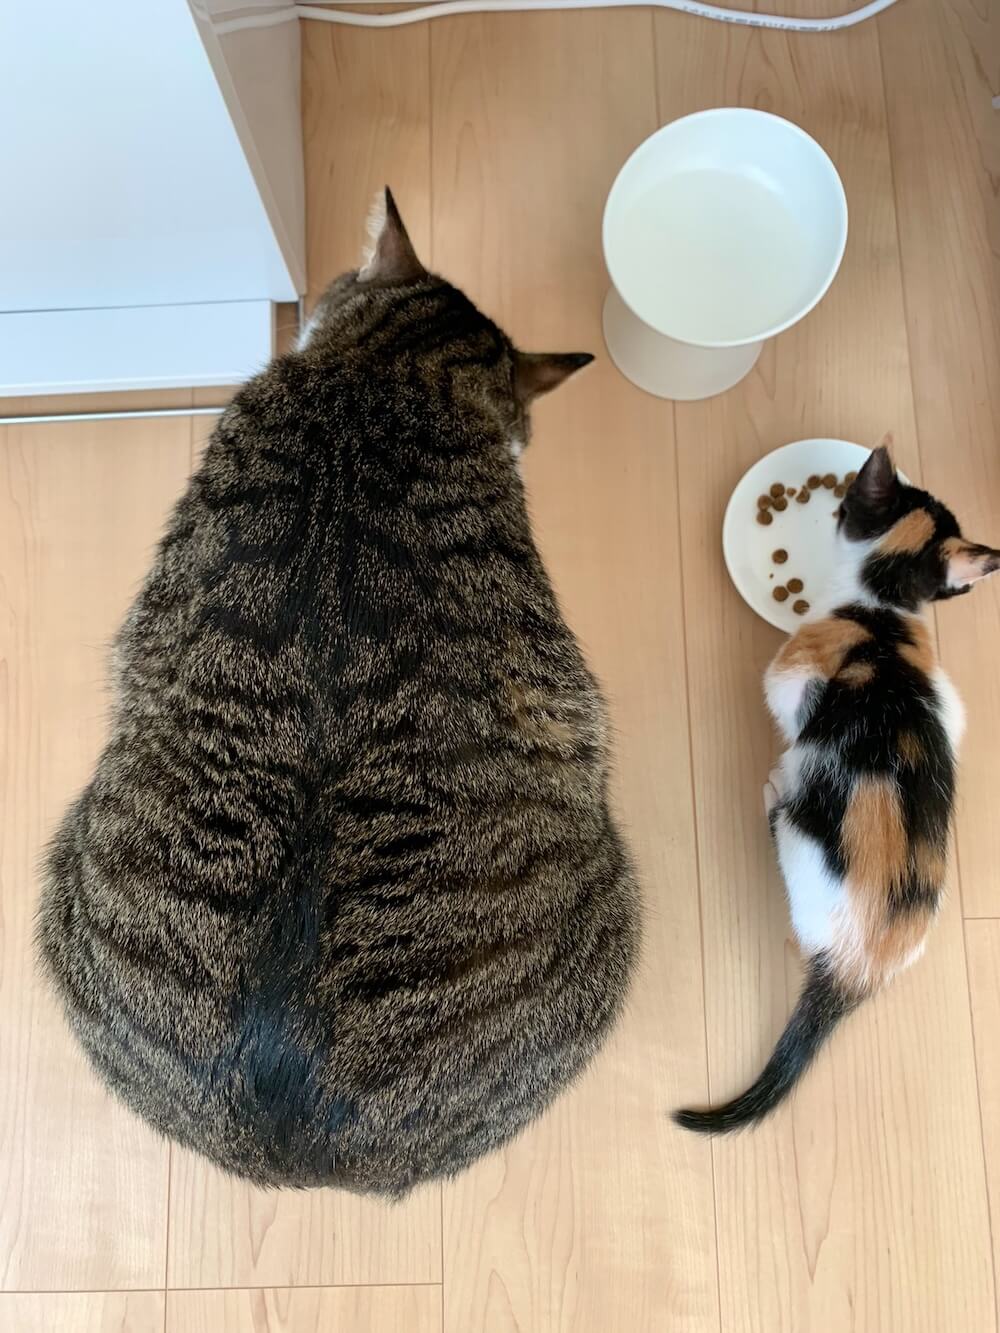 体格差が大きすぎる2匹の猫が並んでごはんを食べる様子